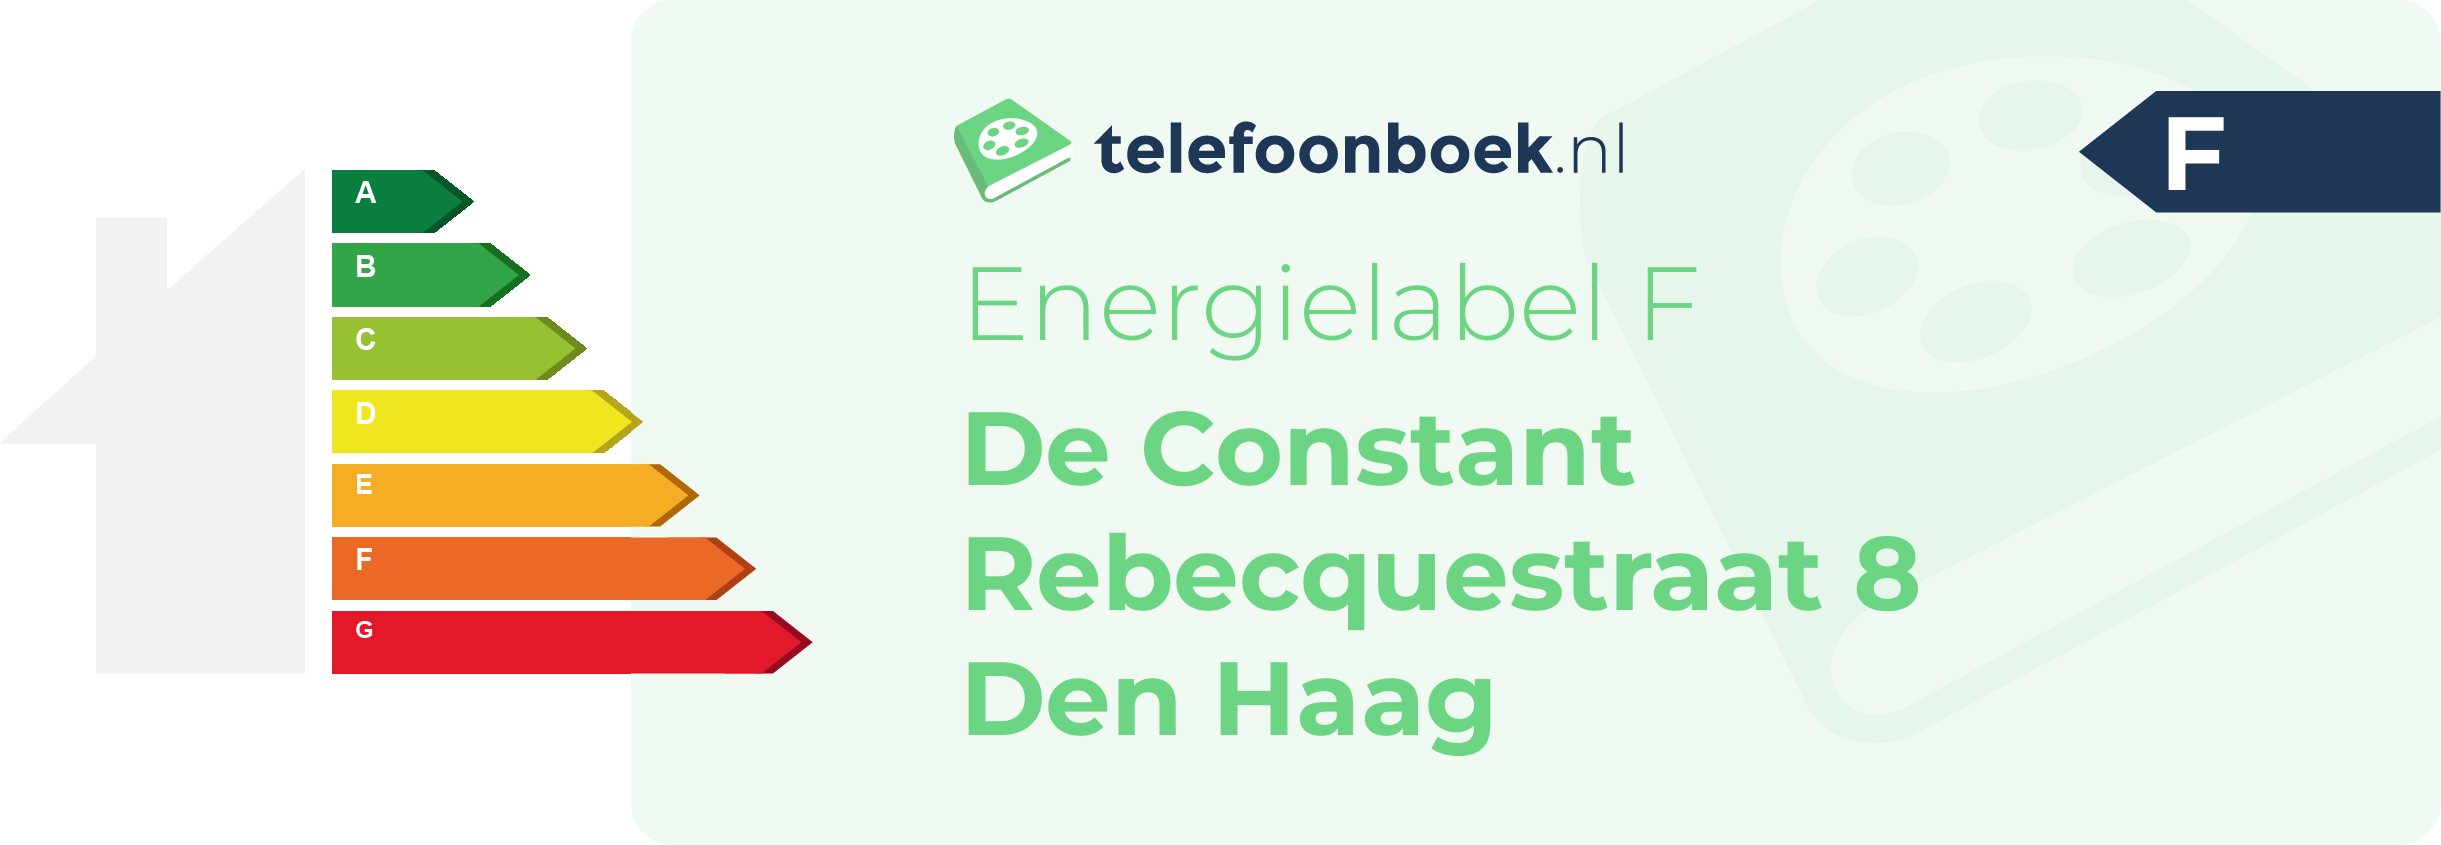 Energielabel De Constant Rebecquestraat 8 Den Haag